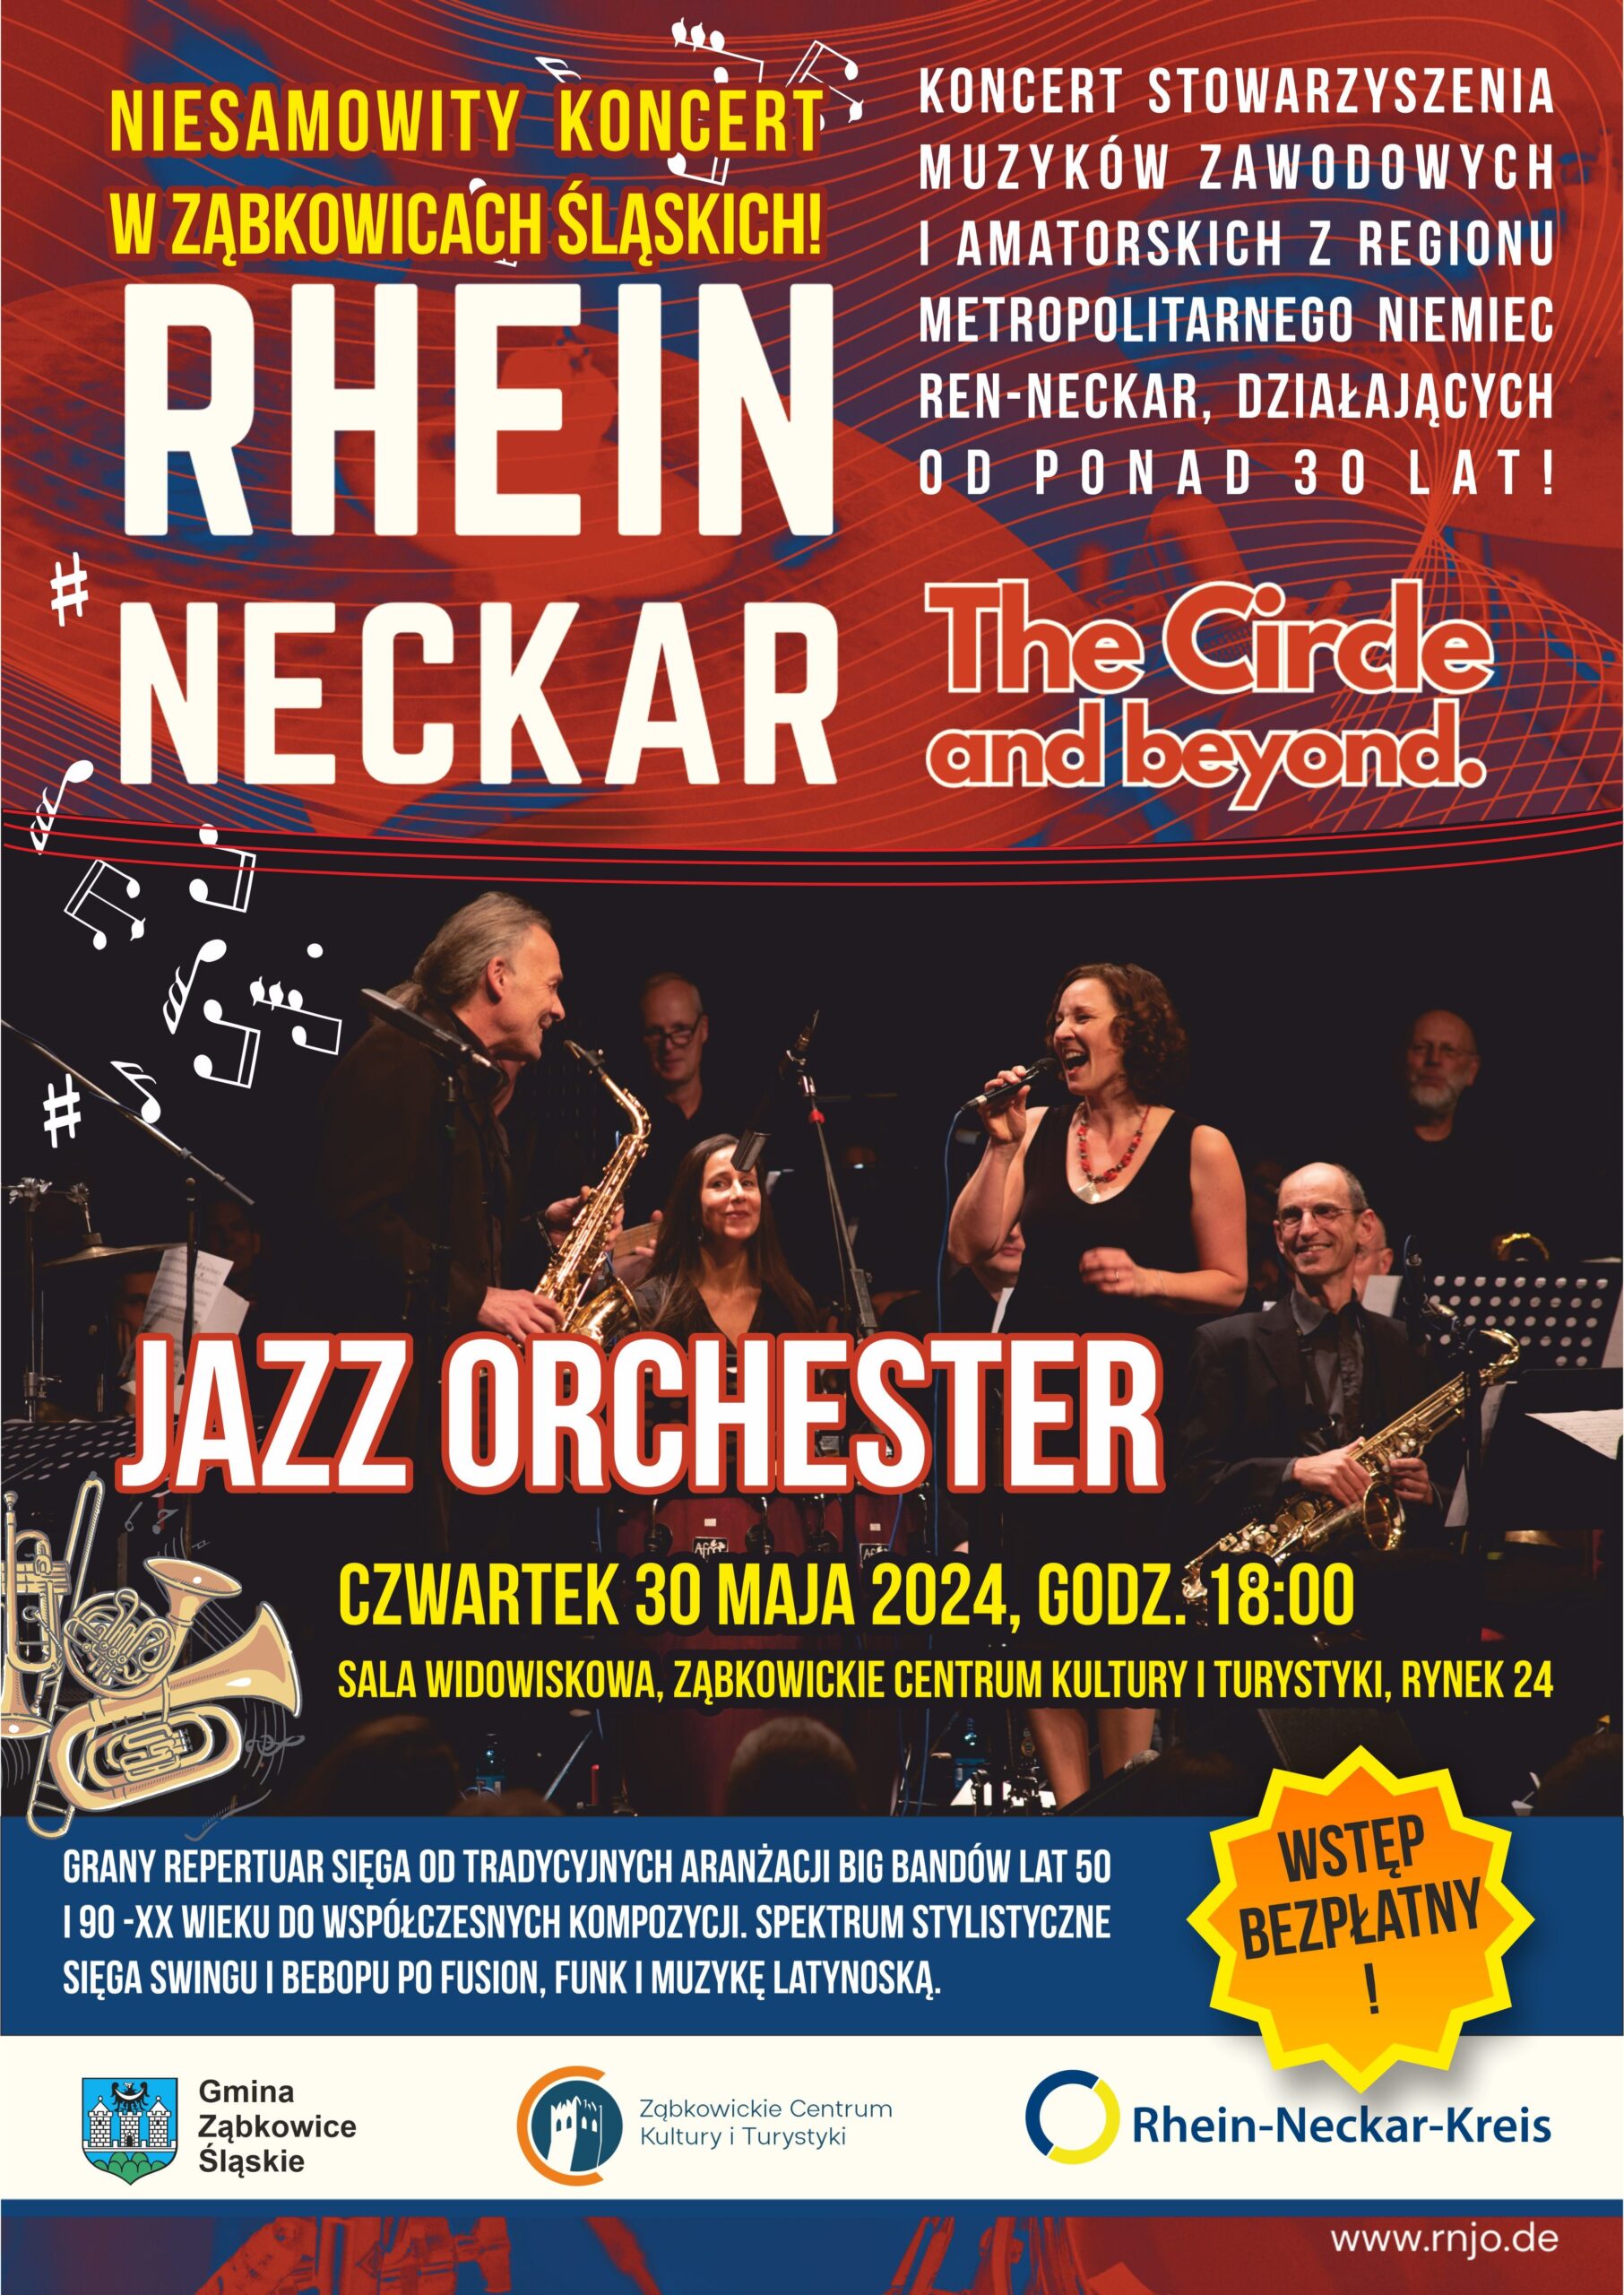 Plakat informujący o koncercie Rhein Neckar, Jazz Orchester i The Circle and beyond 30 maja 2024 o godzinie 18:00 w Ząbkowickim Centrum Kultury i Turystyki.